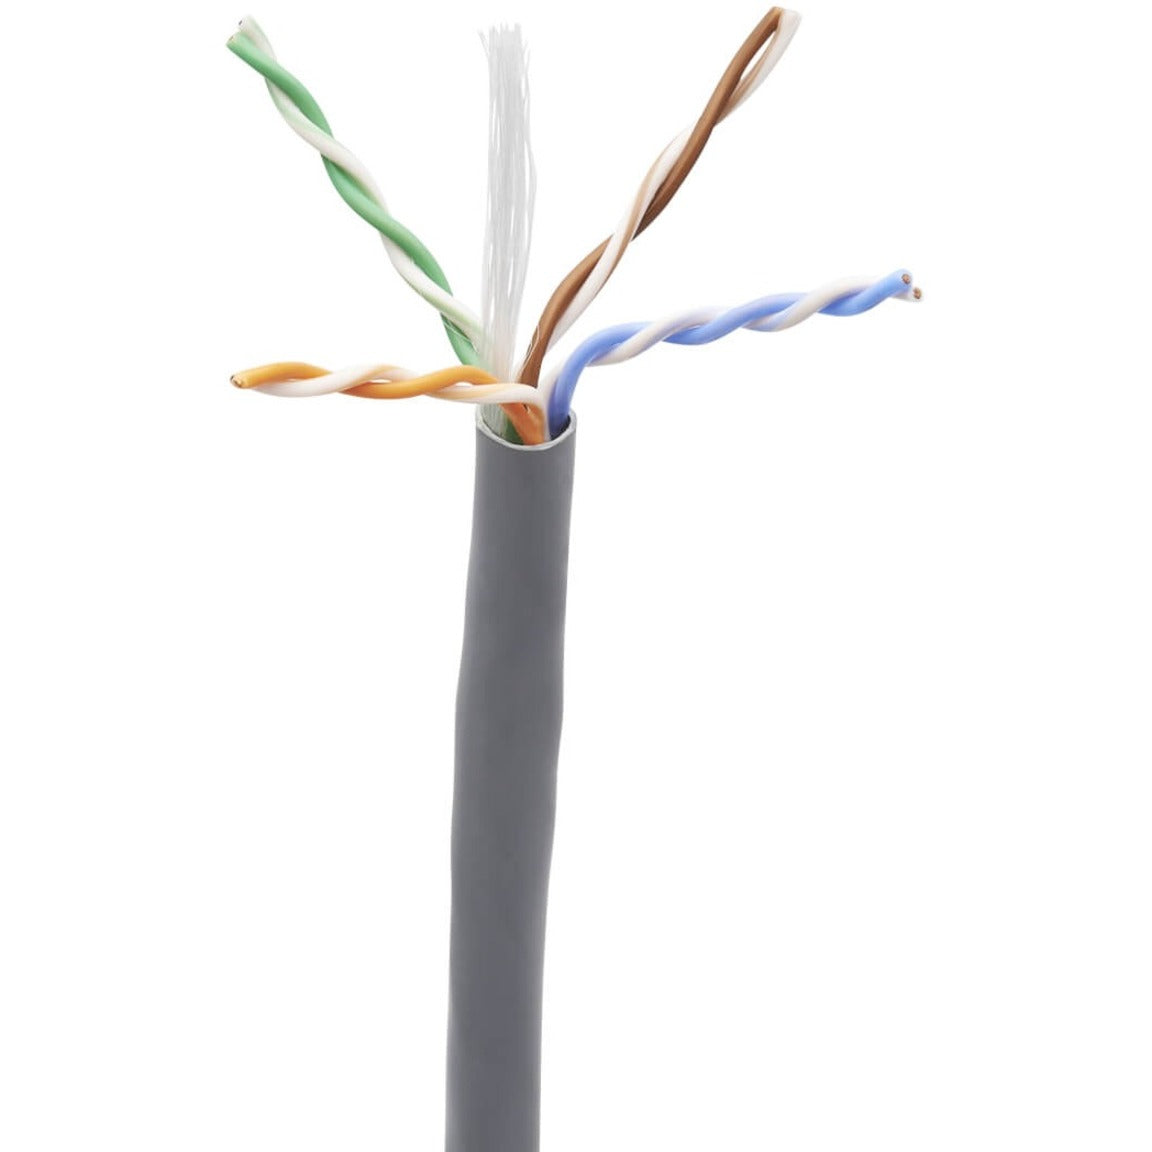 Tripp Lite N224-01K-GY-LP5 Cat6 Ethernet Cable - CMP-LP 0.5A Plenum, Gray, 1000 ft.